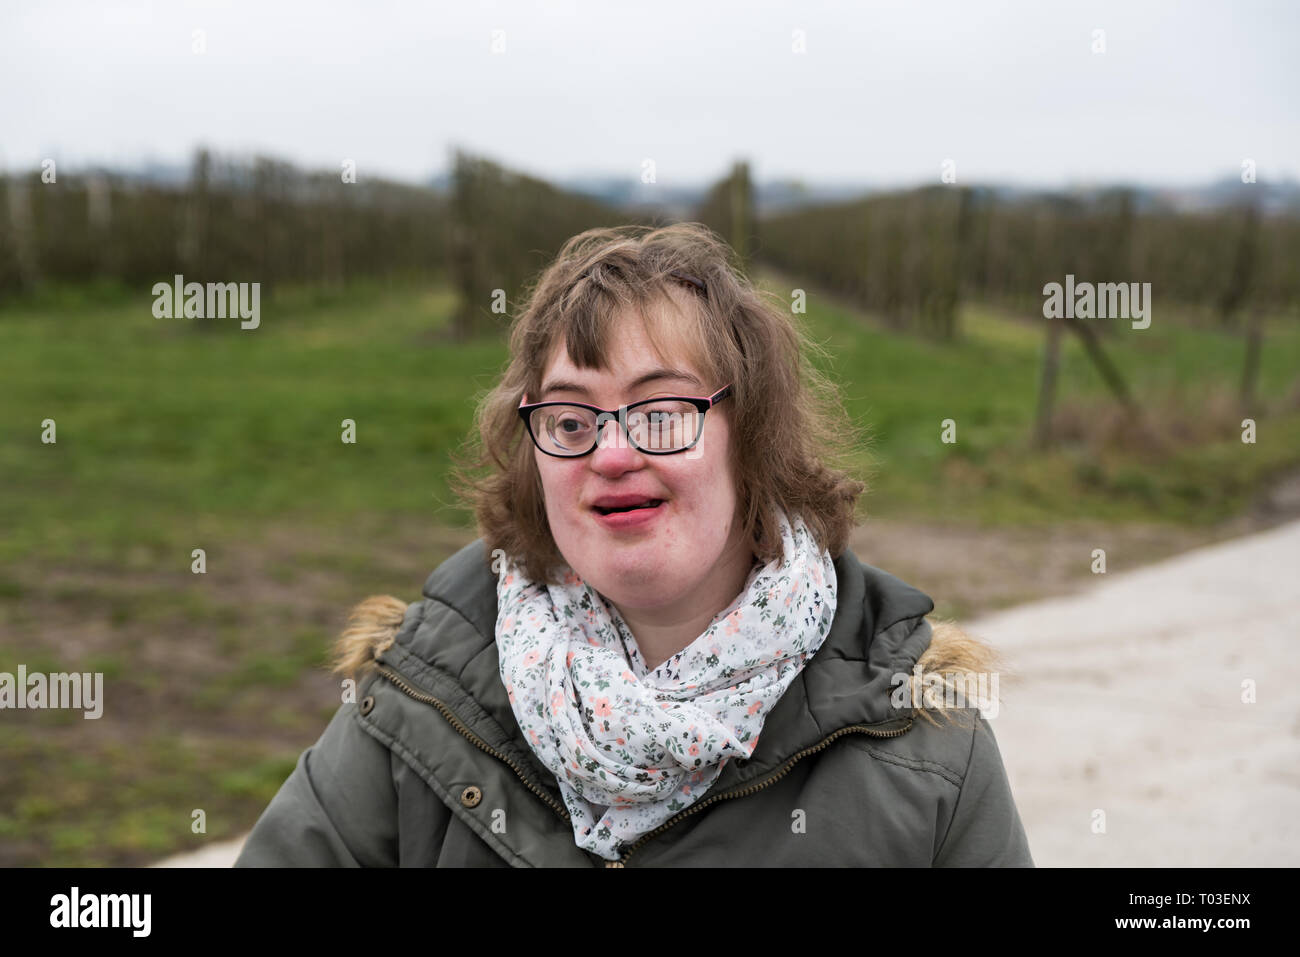 Hakendover, Flandern/Belgien - 03 02 2019: Portrait eines glücklichen weiß Frau mit Down-syndrom und Kurzsichtigkeit Stockfoto